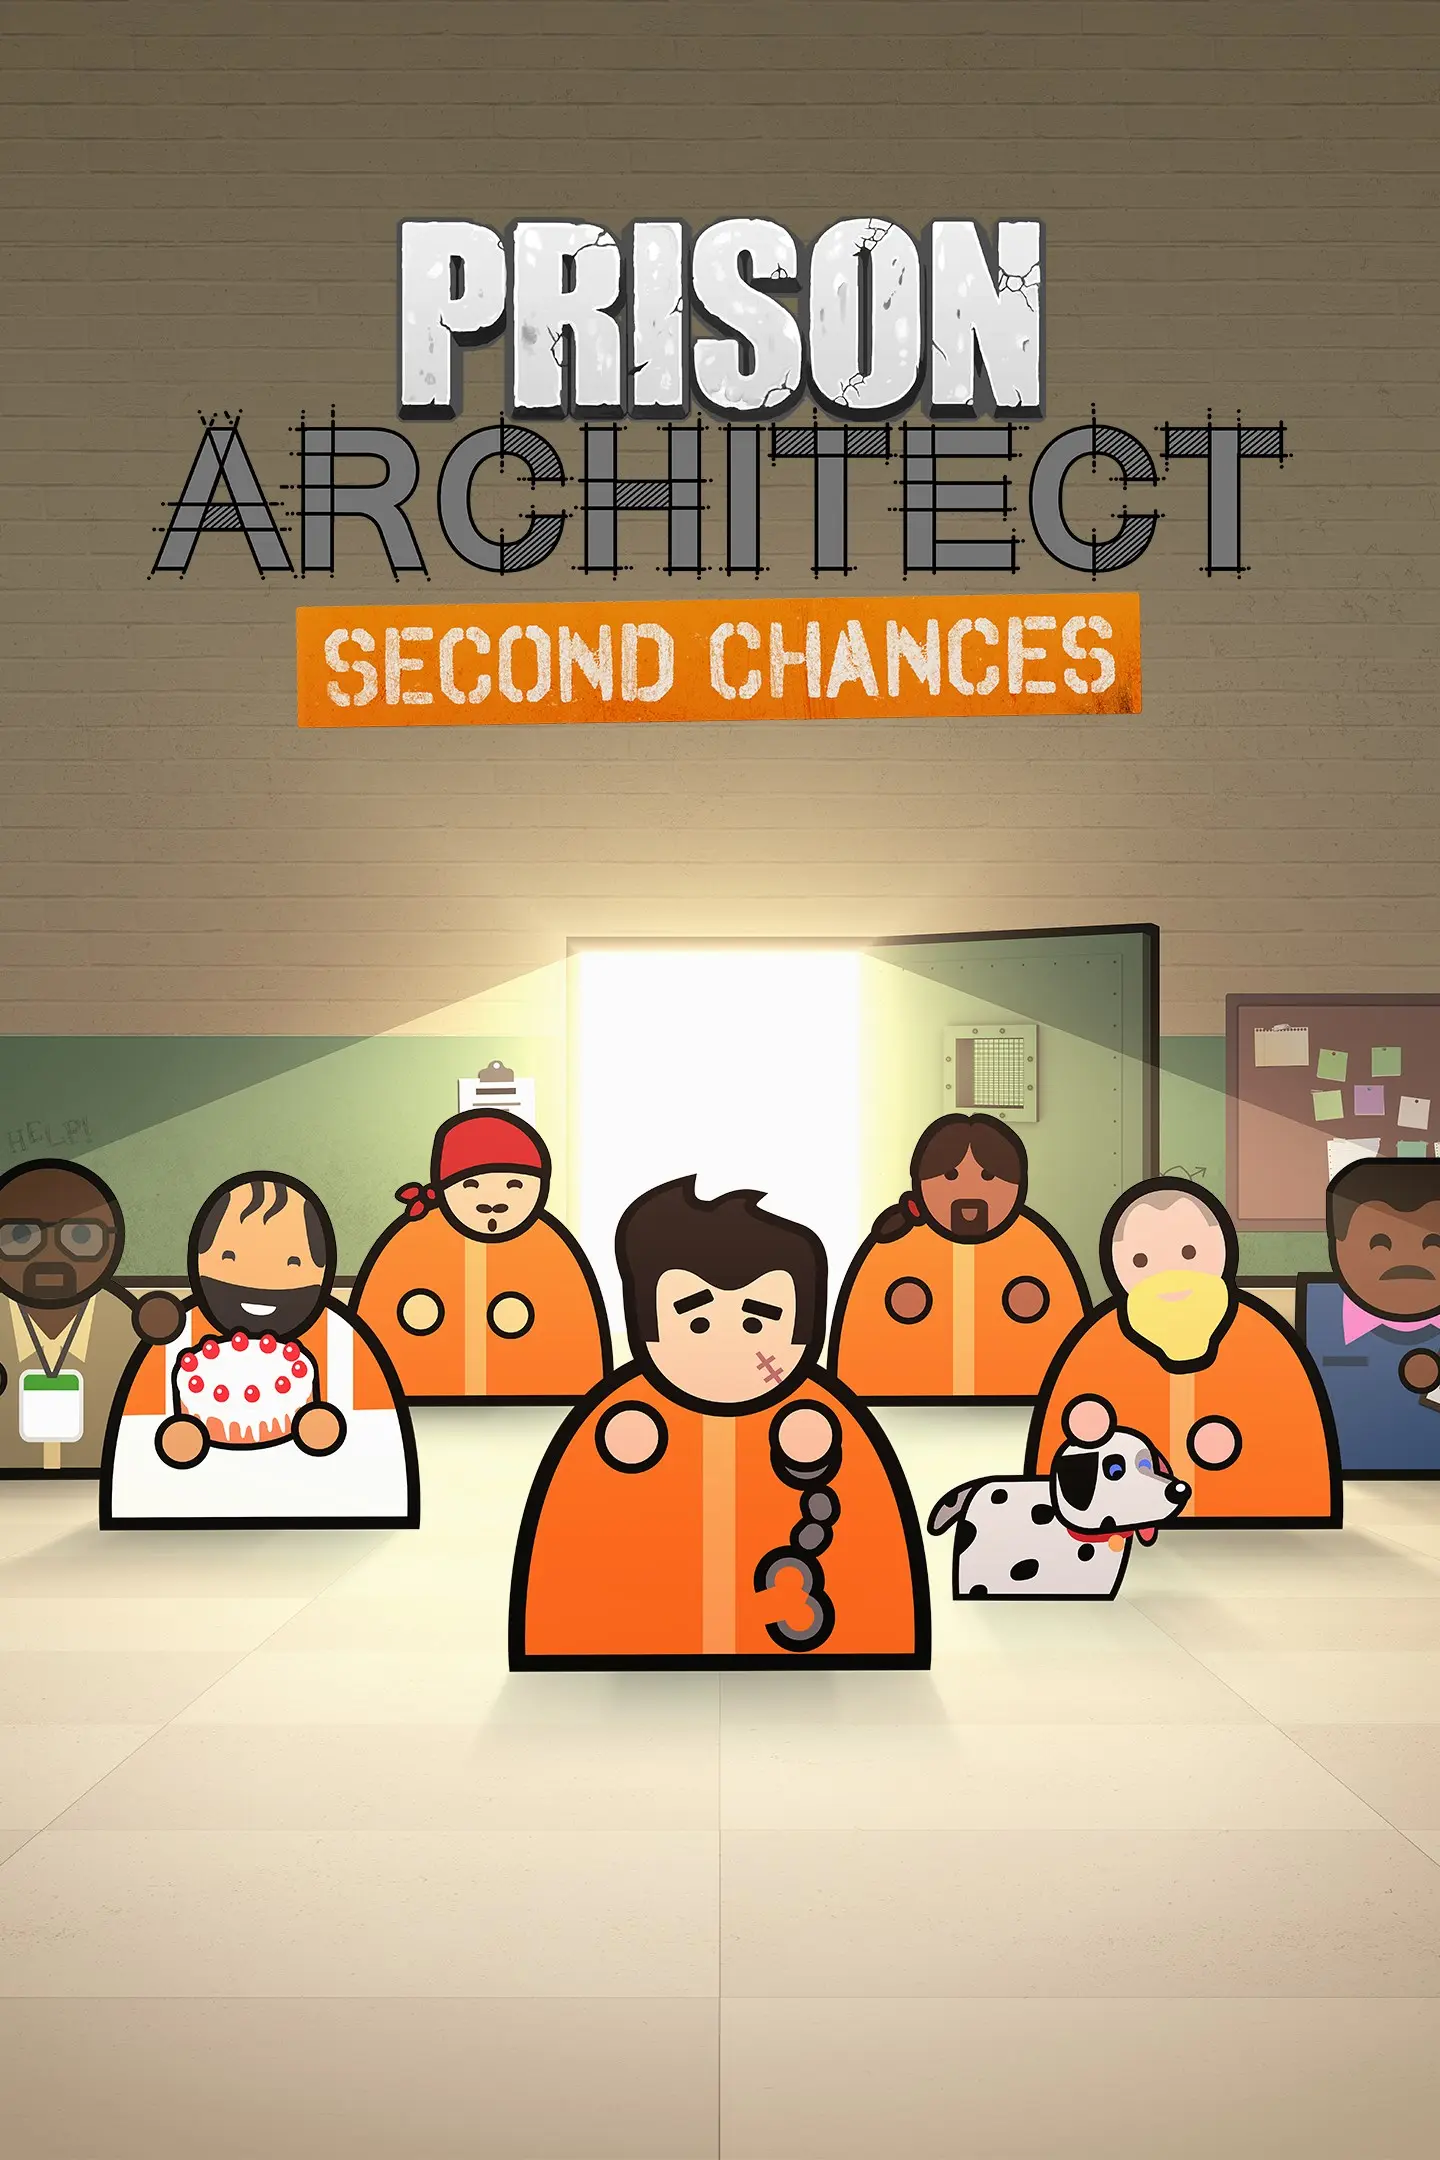 Prison Architect - Second Chances DLC (PC / Mac) - Steam - Digital Code